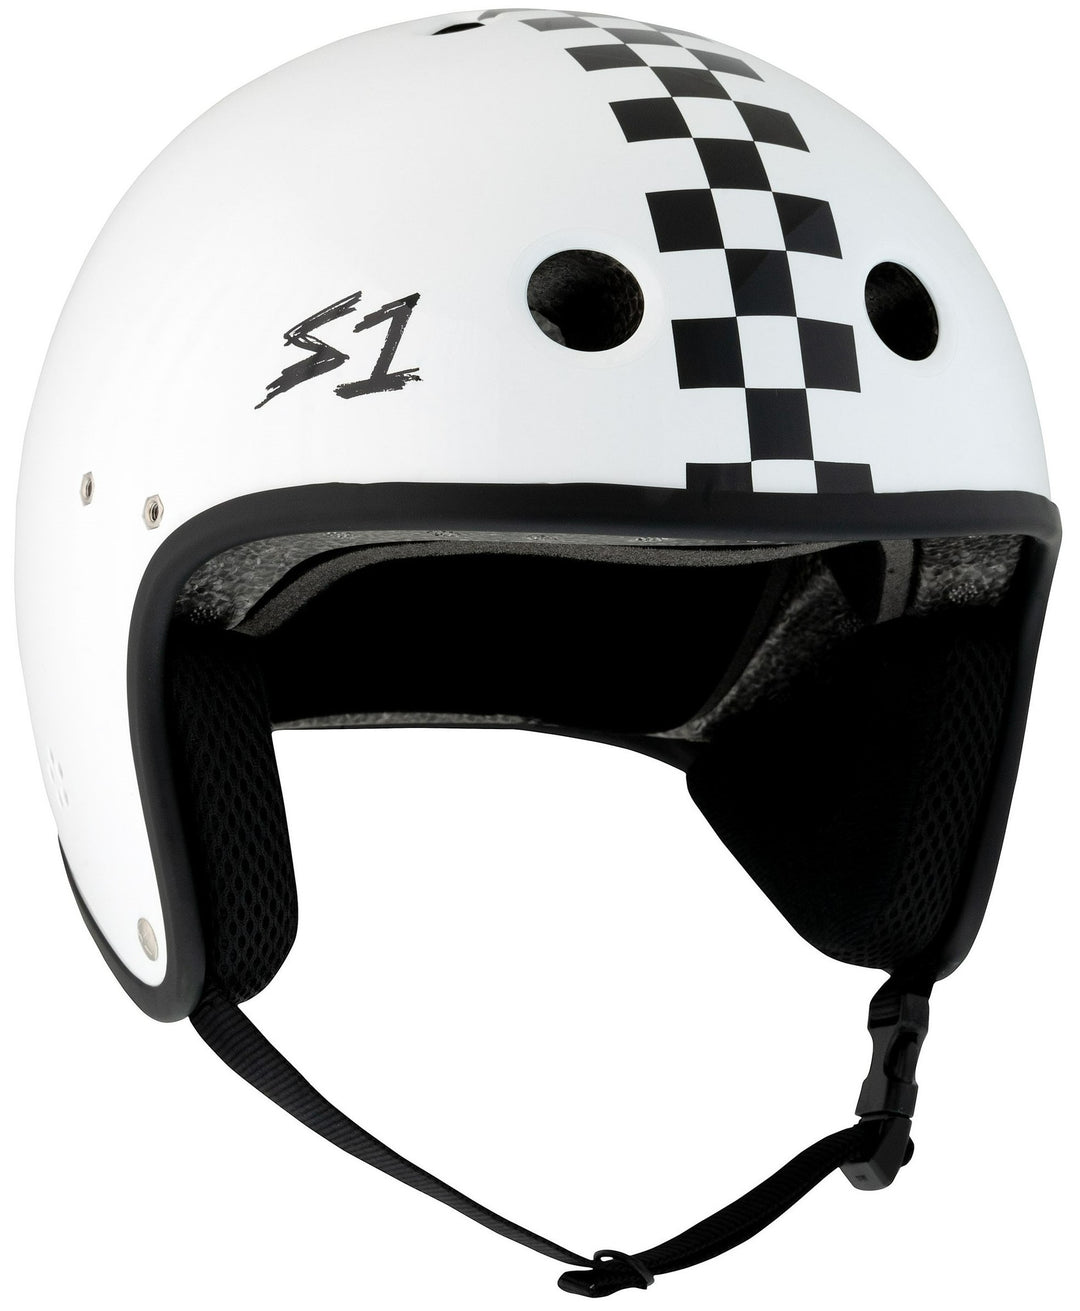 S1 Retro Lifer Helmet - White Gloss Checkered